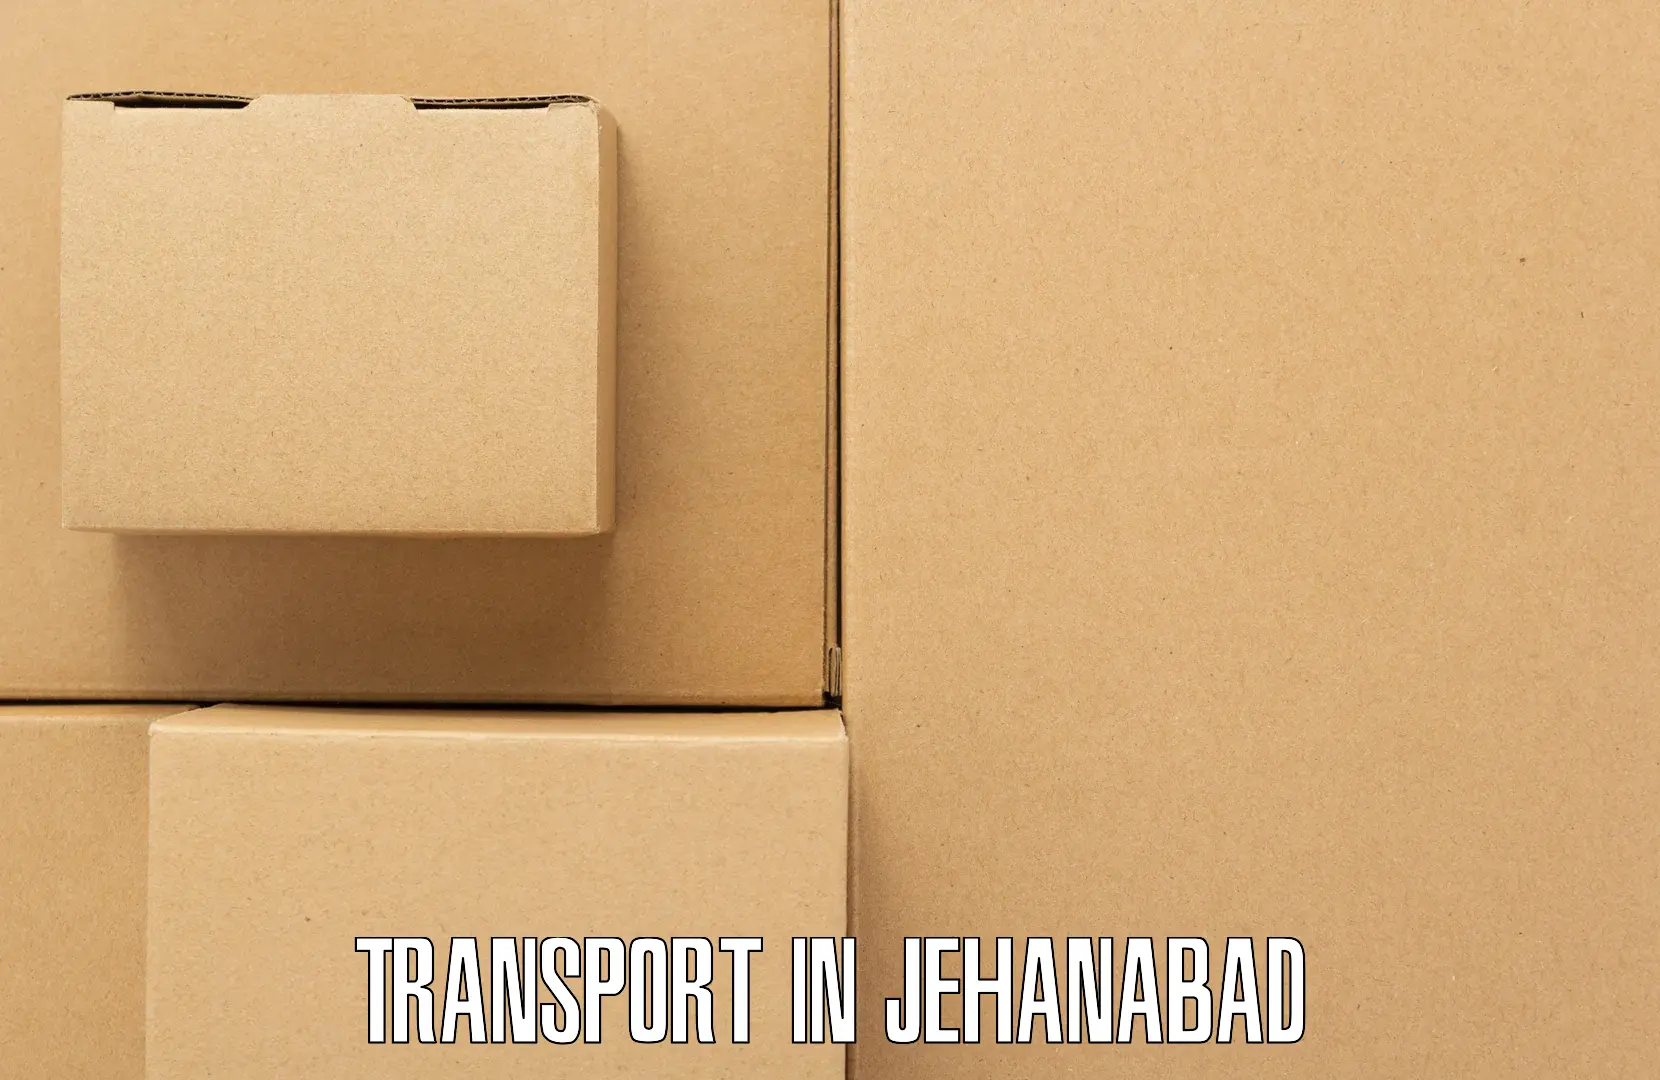 Door to door transport services in Jehanabad